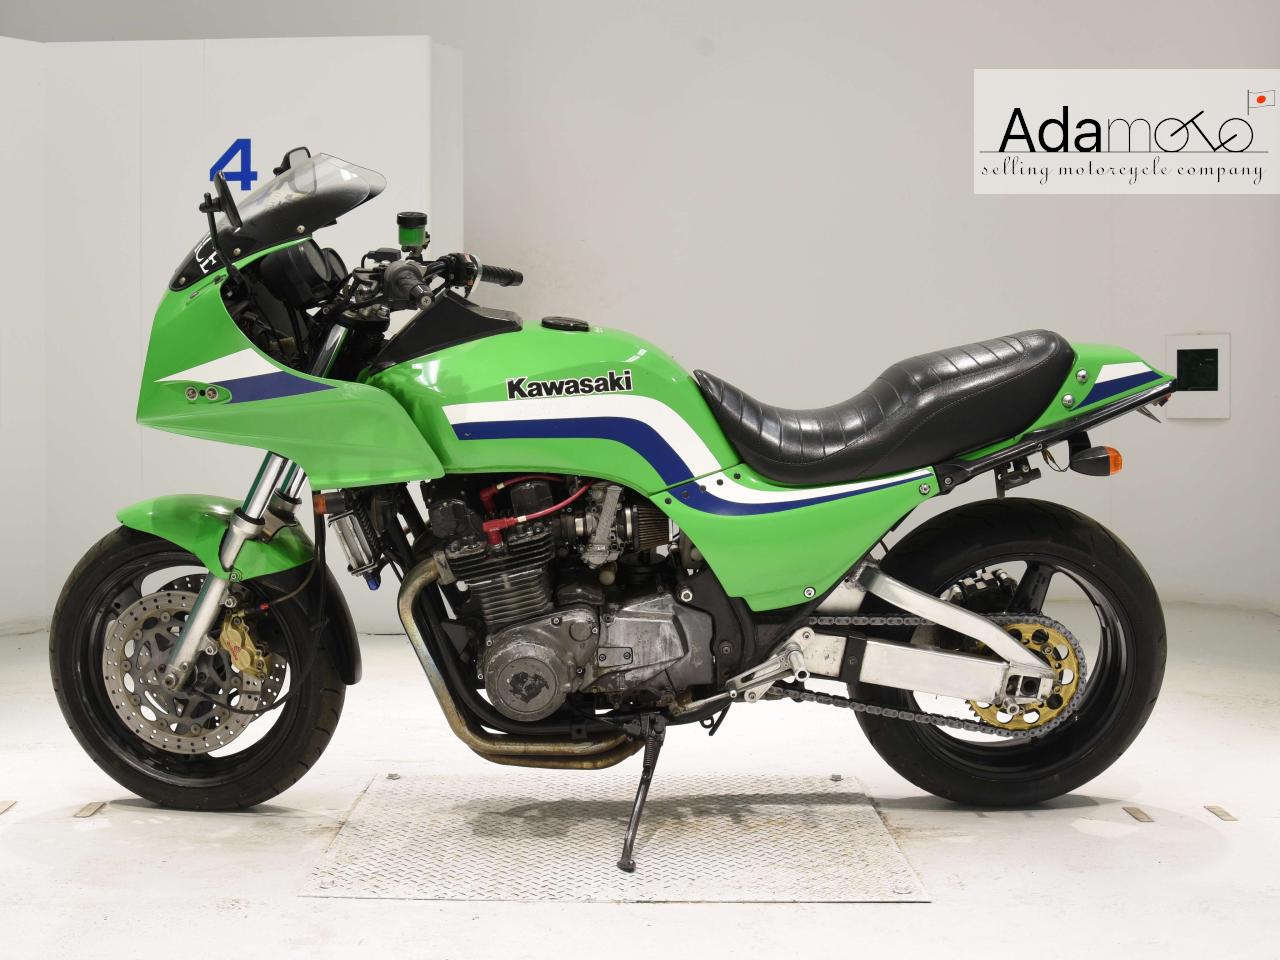 Kawasaki GPZ1100 - Adamoto - Motorcycles from Japan